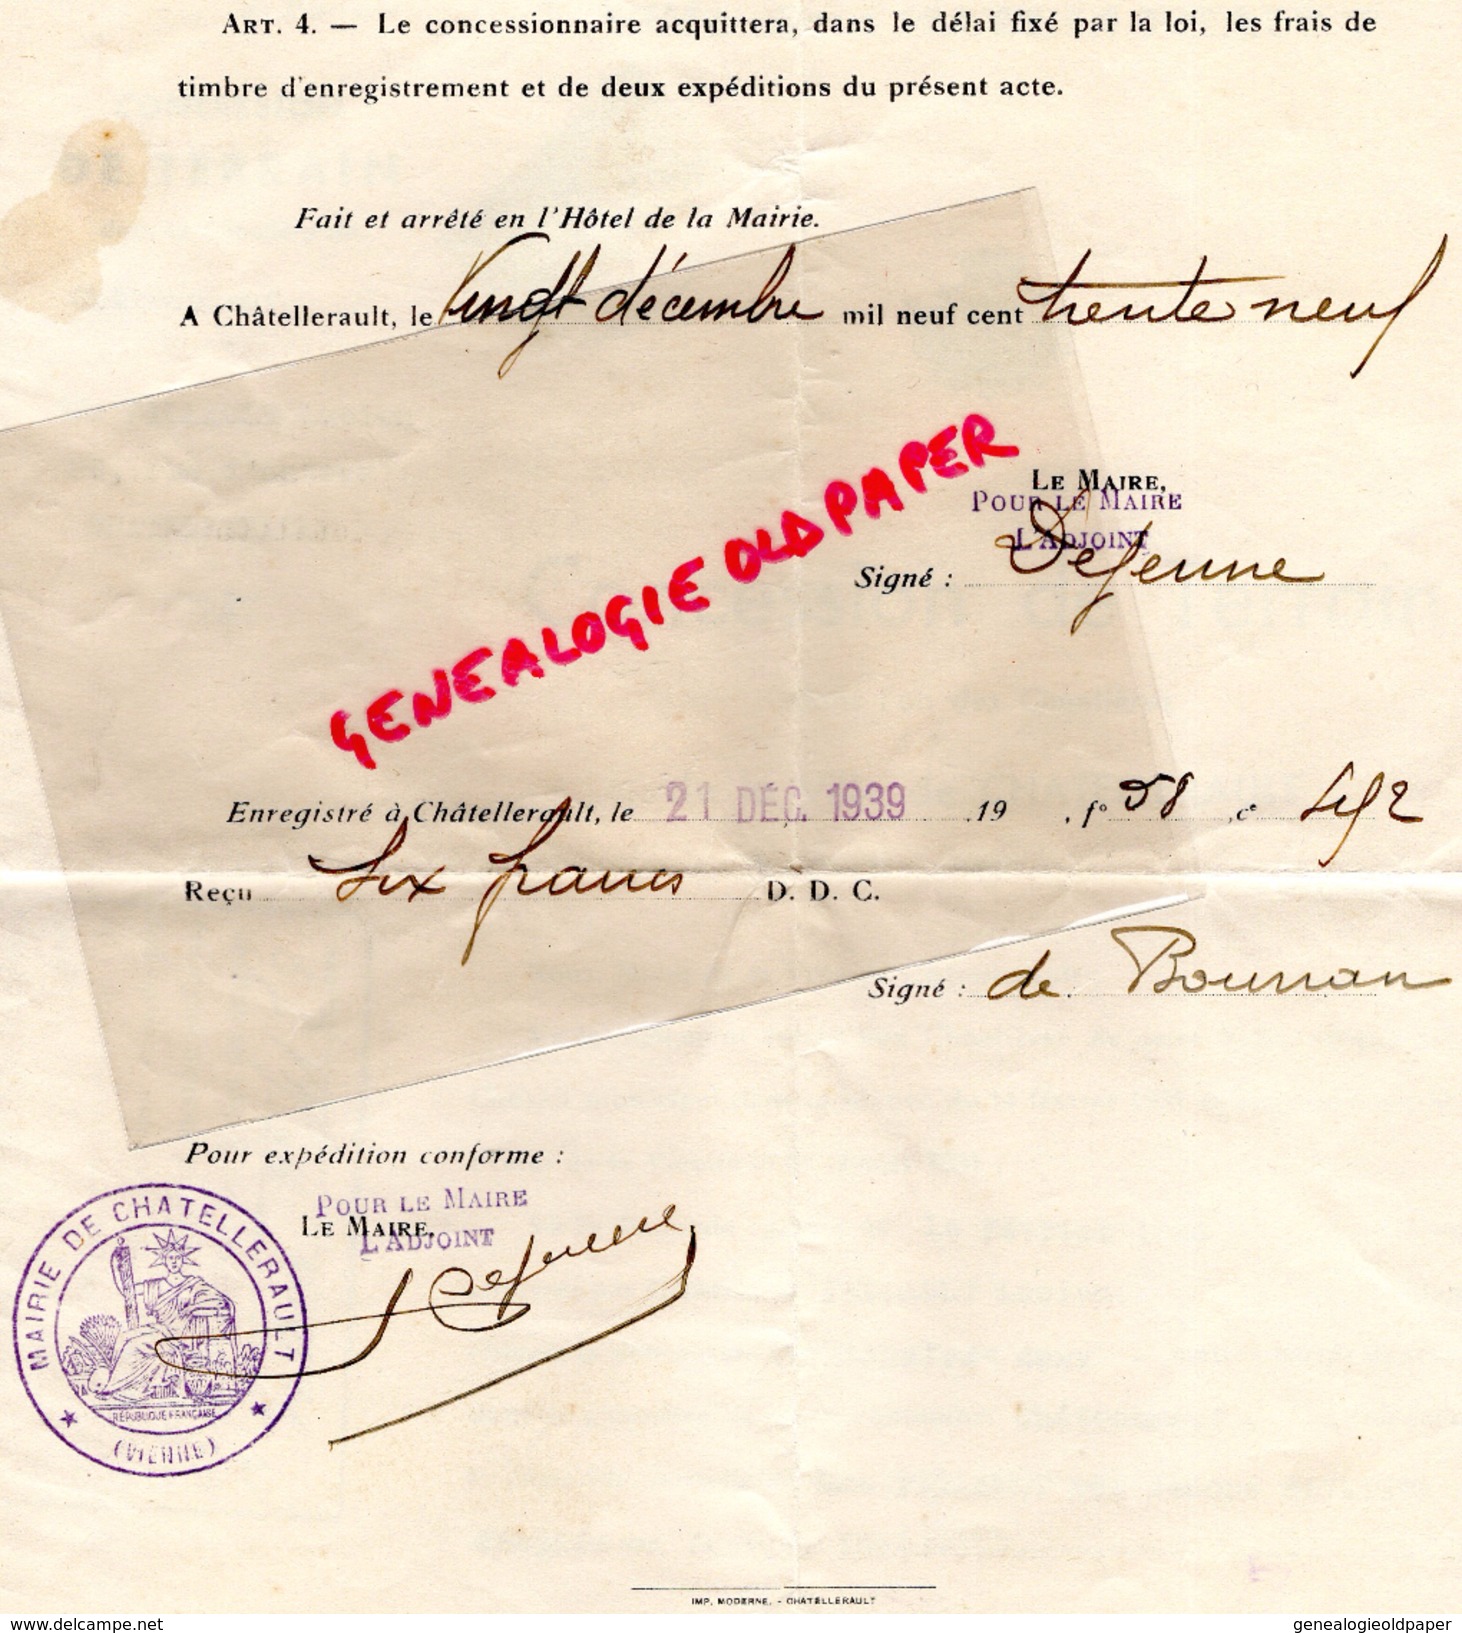 86- CHATELLERAULT- CONCESSION DE TERRAIN CIMETIERE CHATEAUNEUF- LUCIEN PILLAULT- JEANNE SAVATIER 1939 - Historical Documents